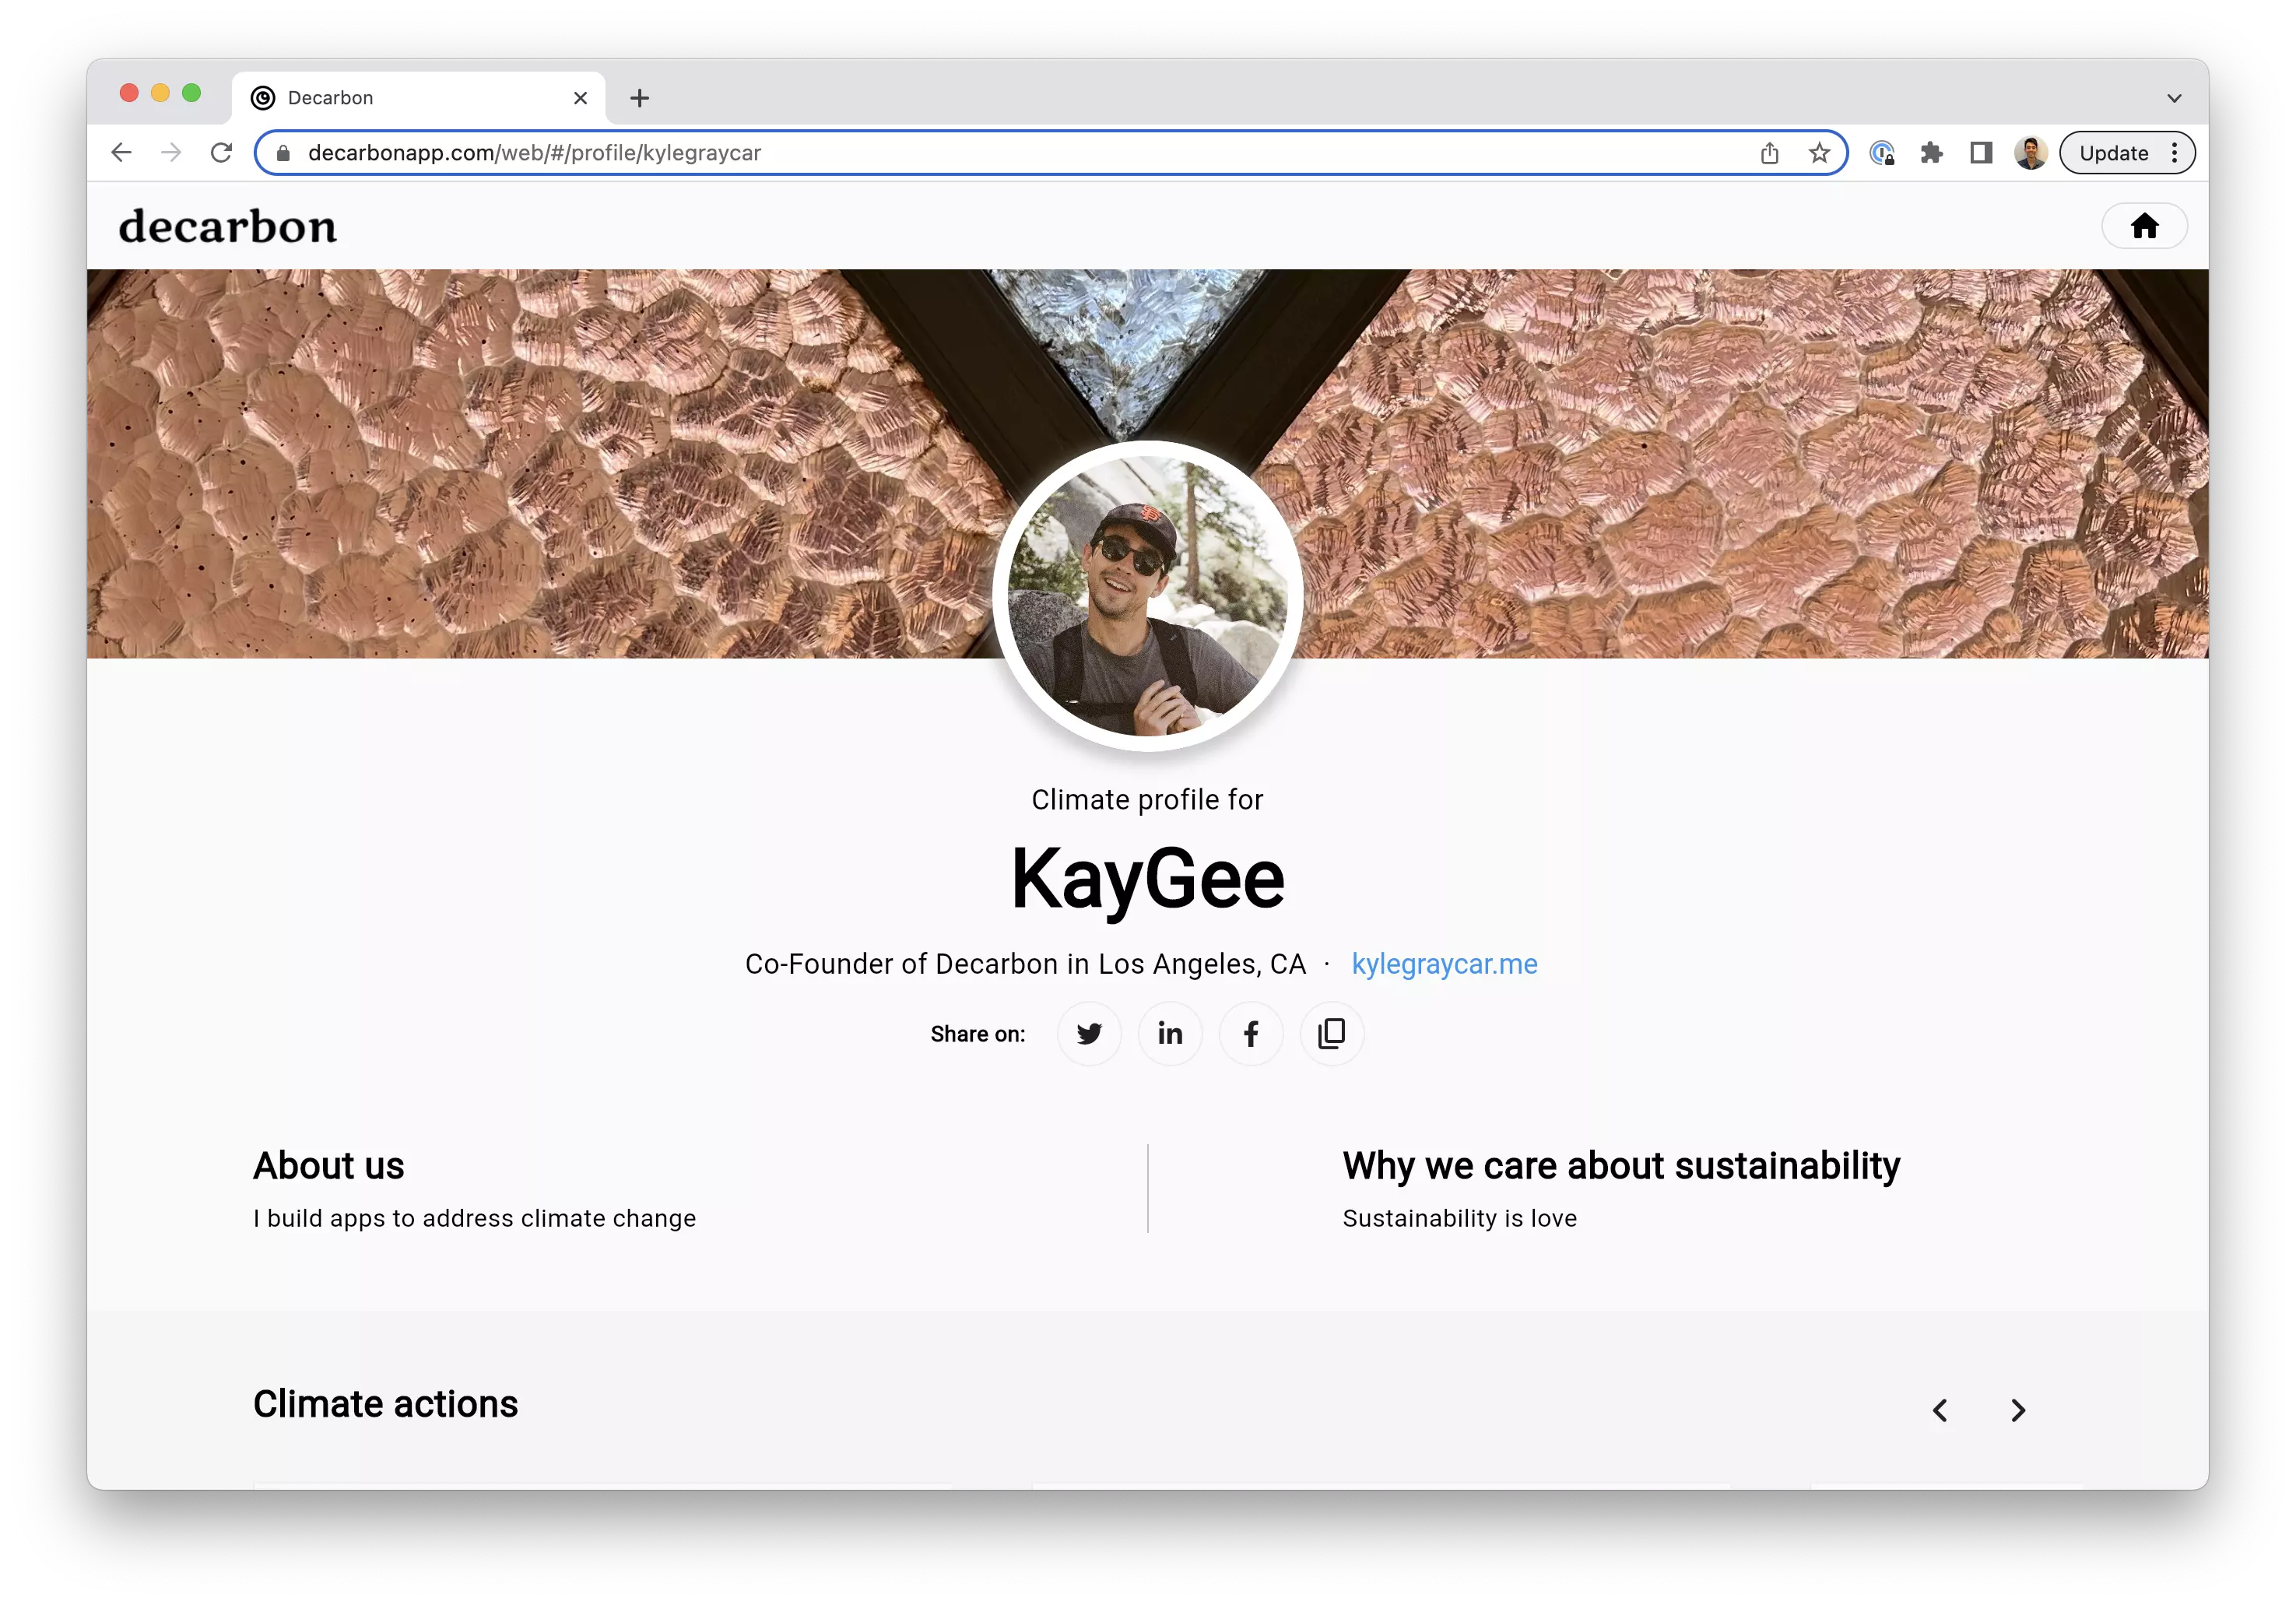 Kyle's public profile on Decarbon